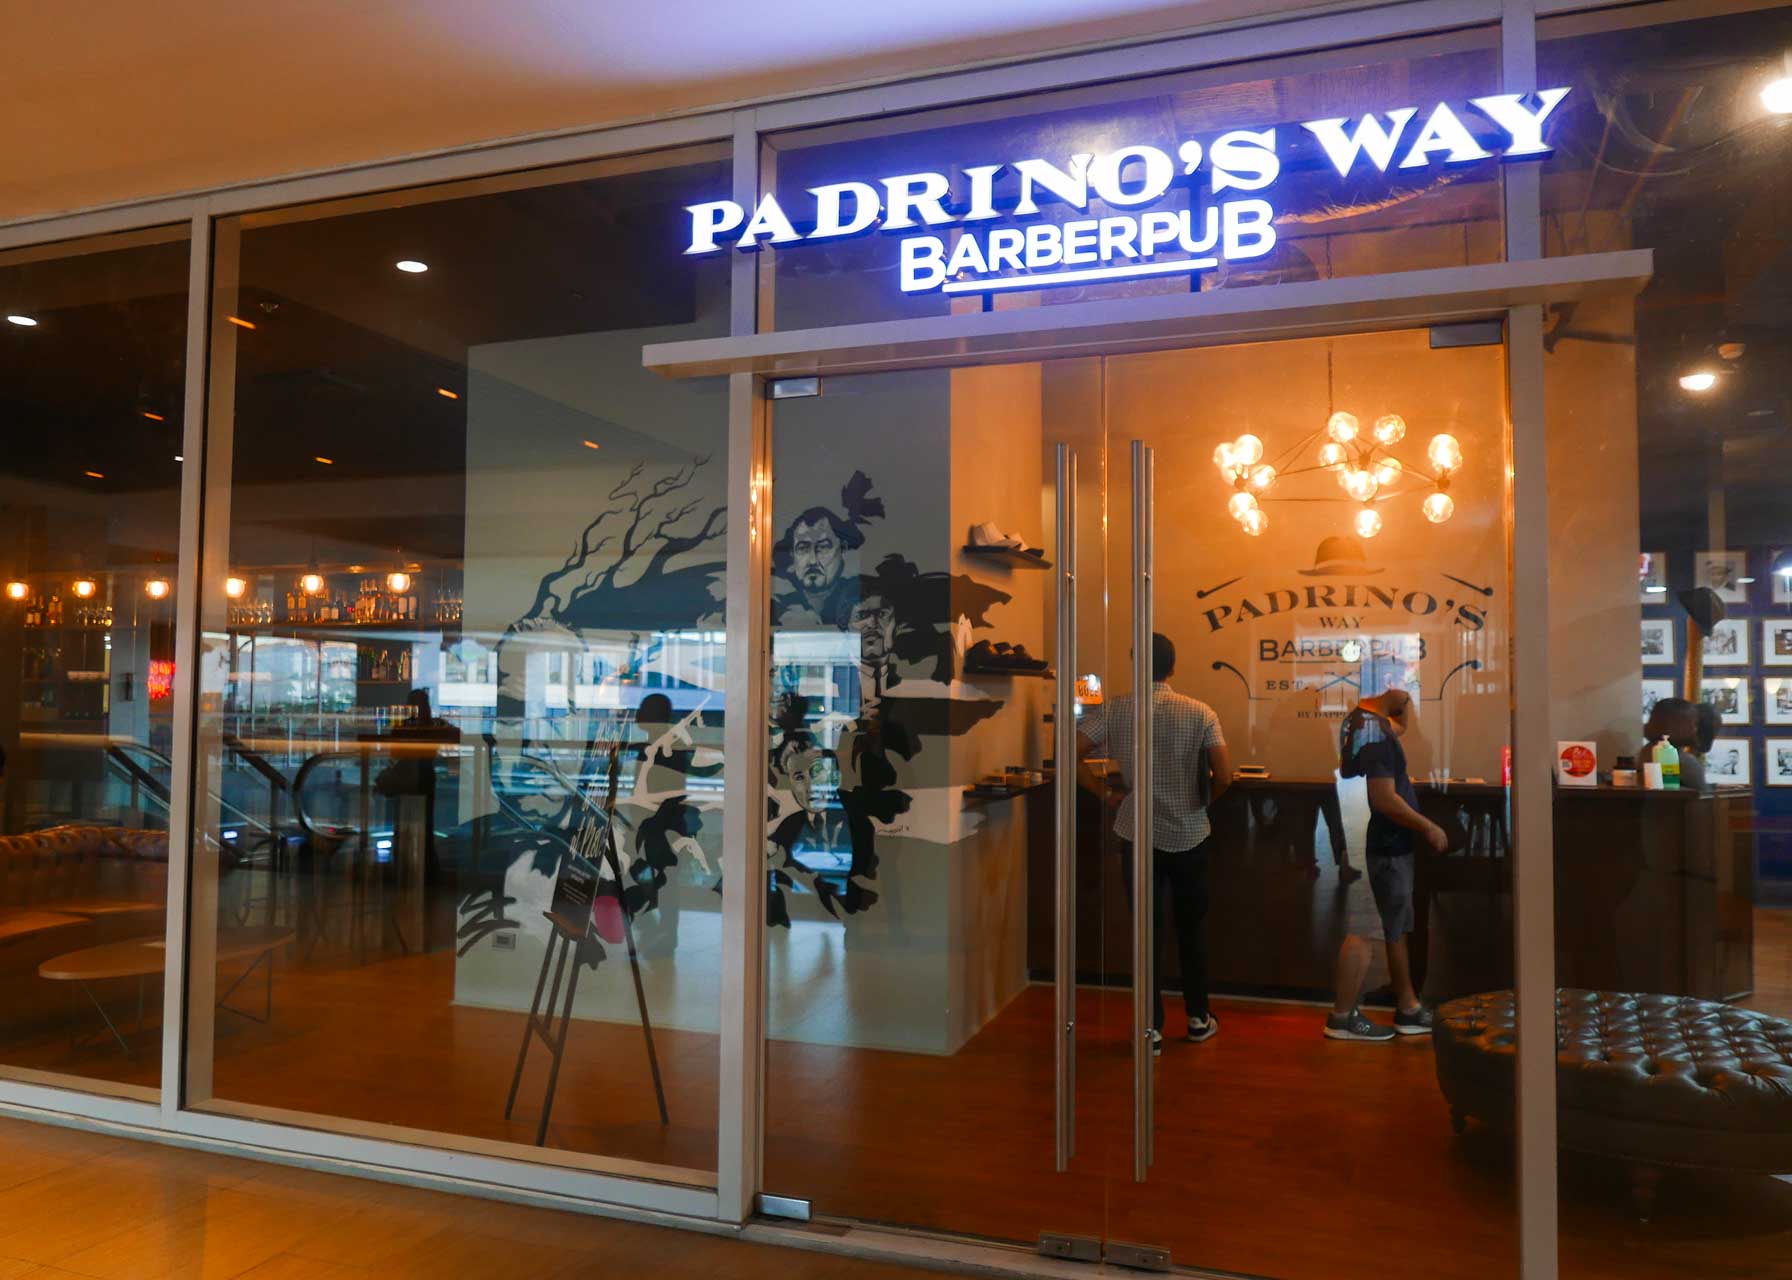 Padrino's Way BarberPub